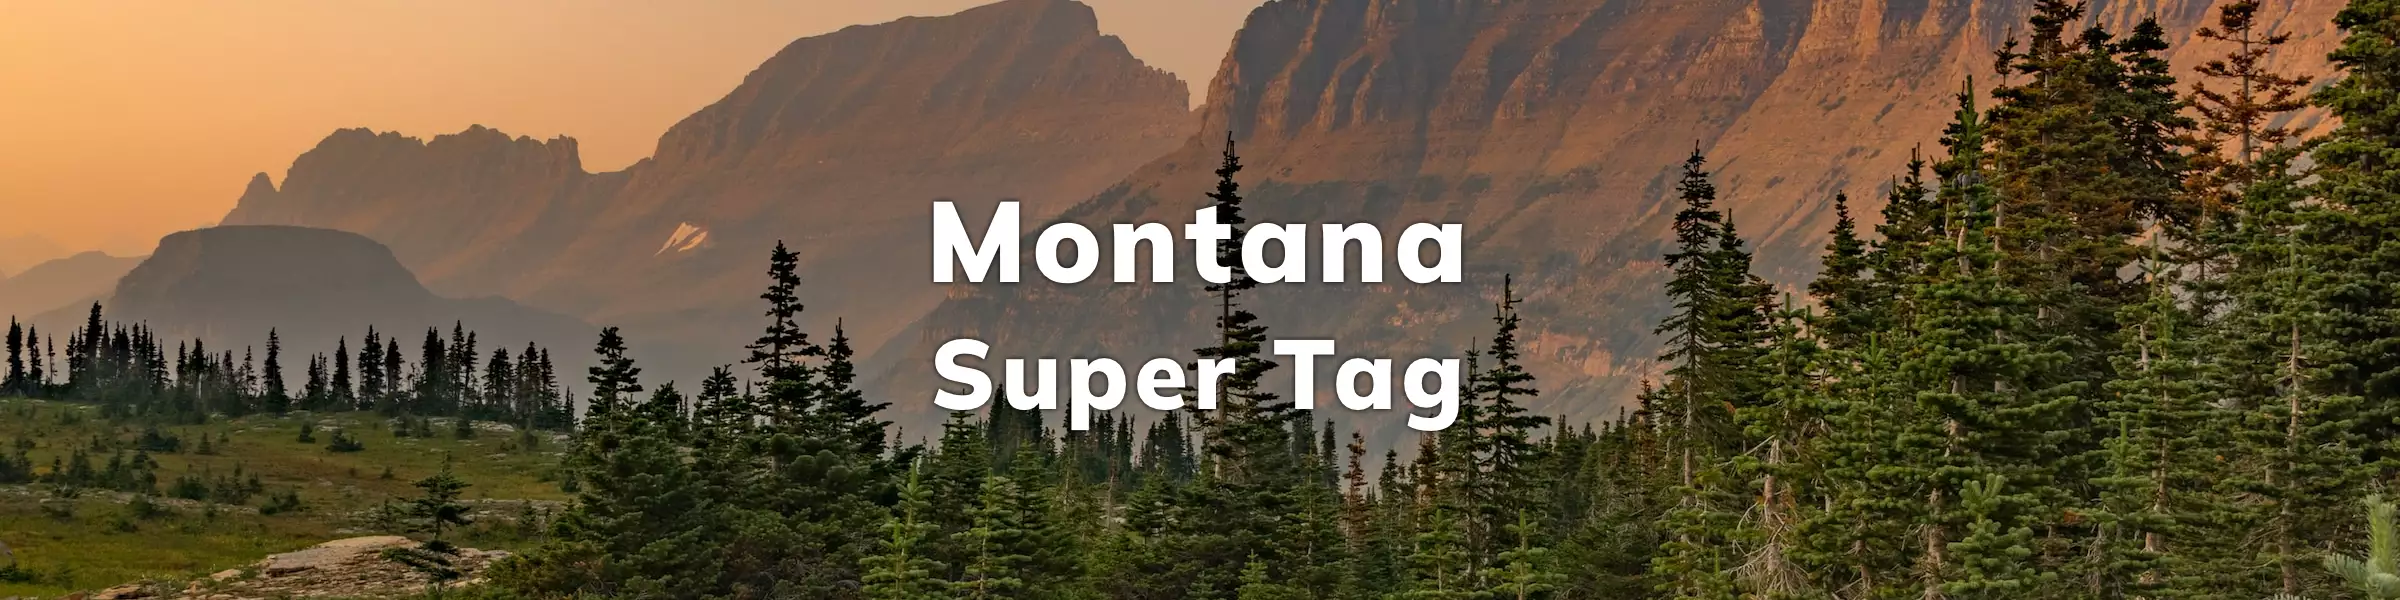 Montana Super Tag